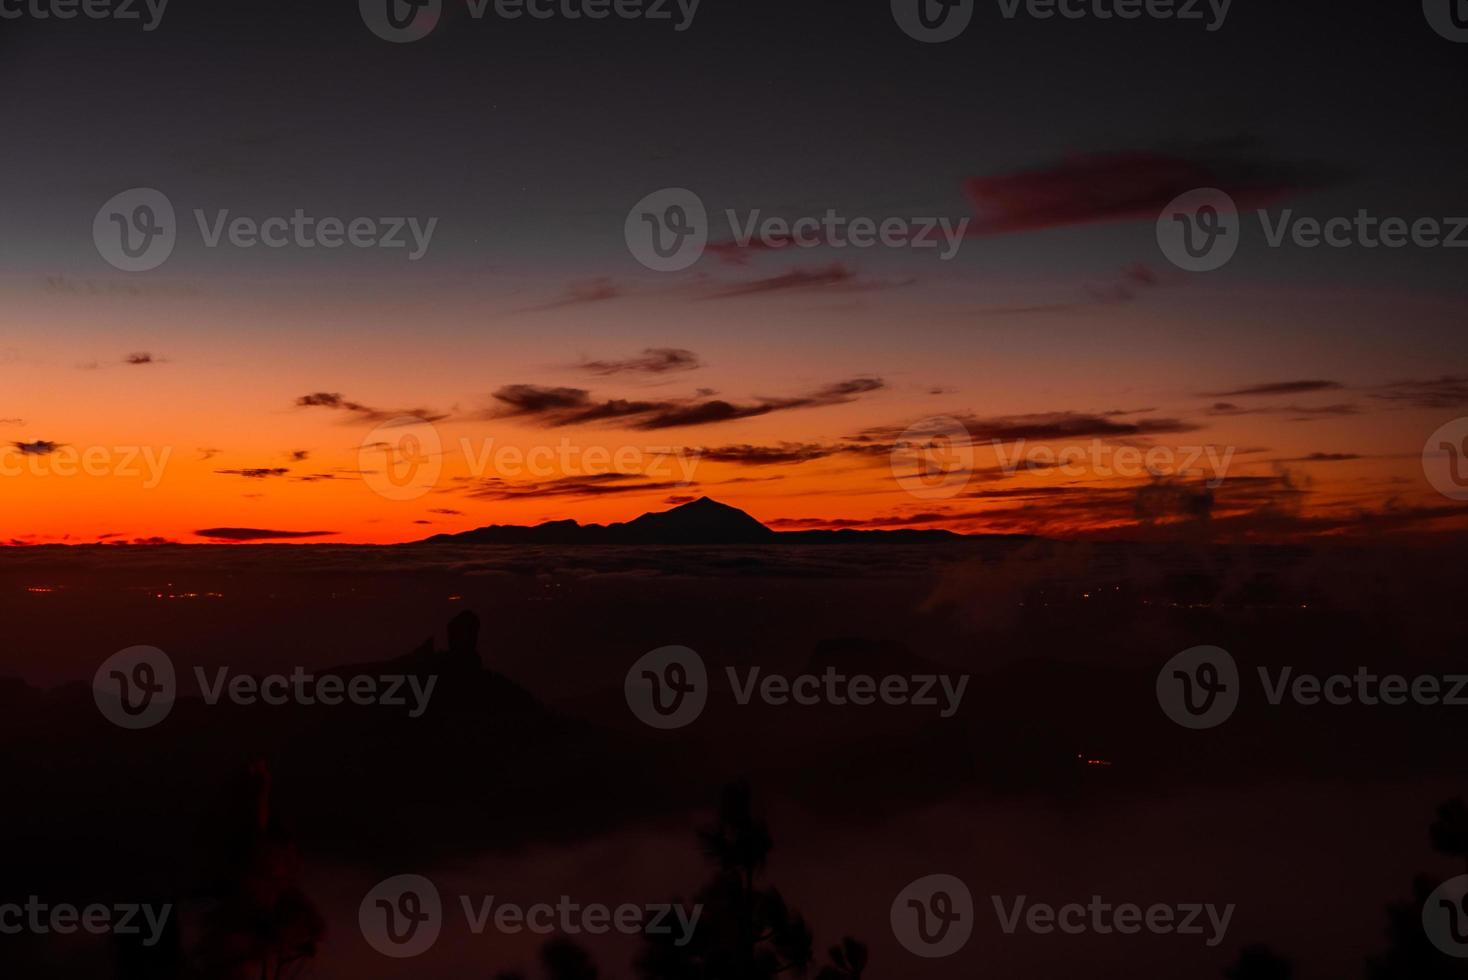 espectacular puesta de sol sobre las nubes del parque nacional del volcán teide en tenerife. foto